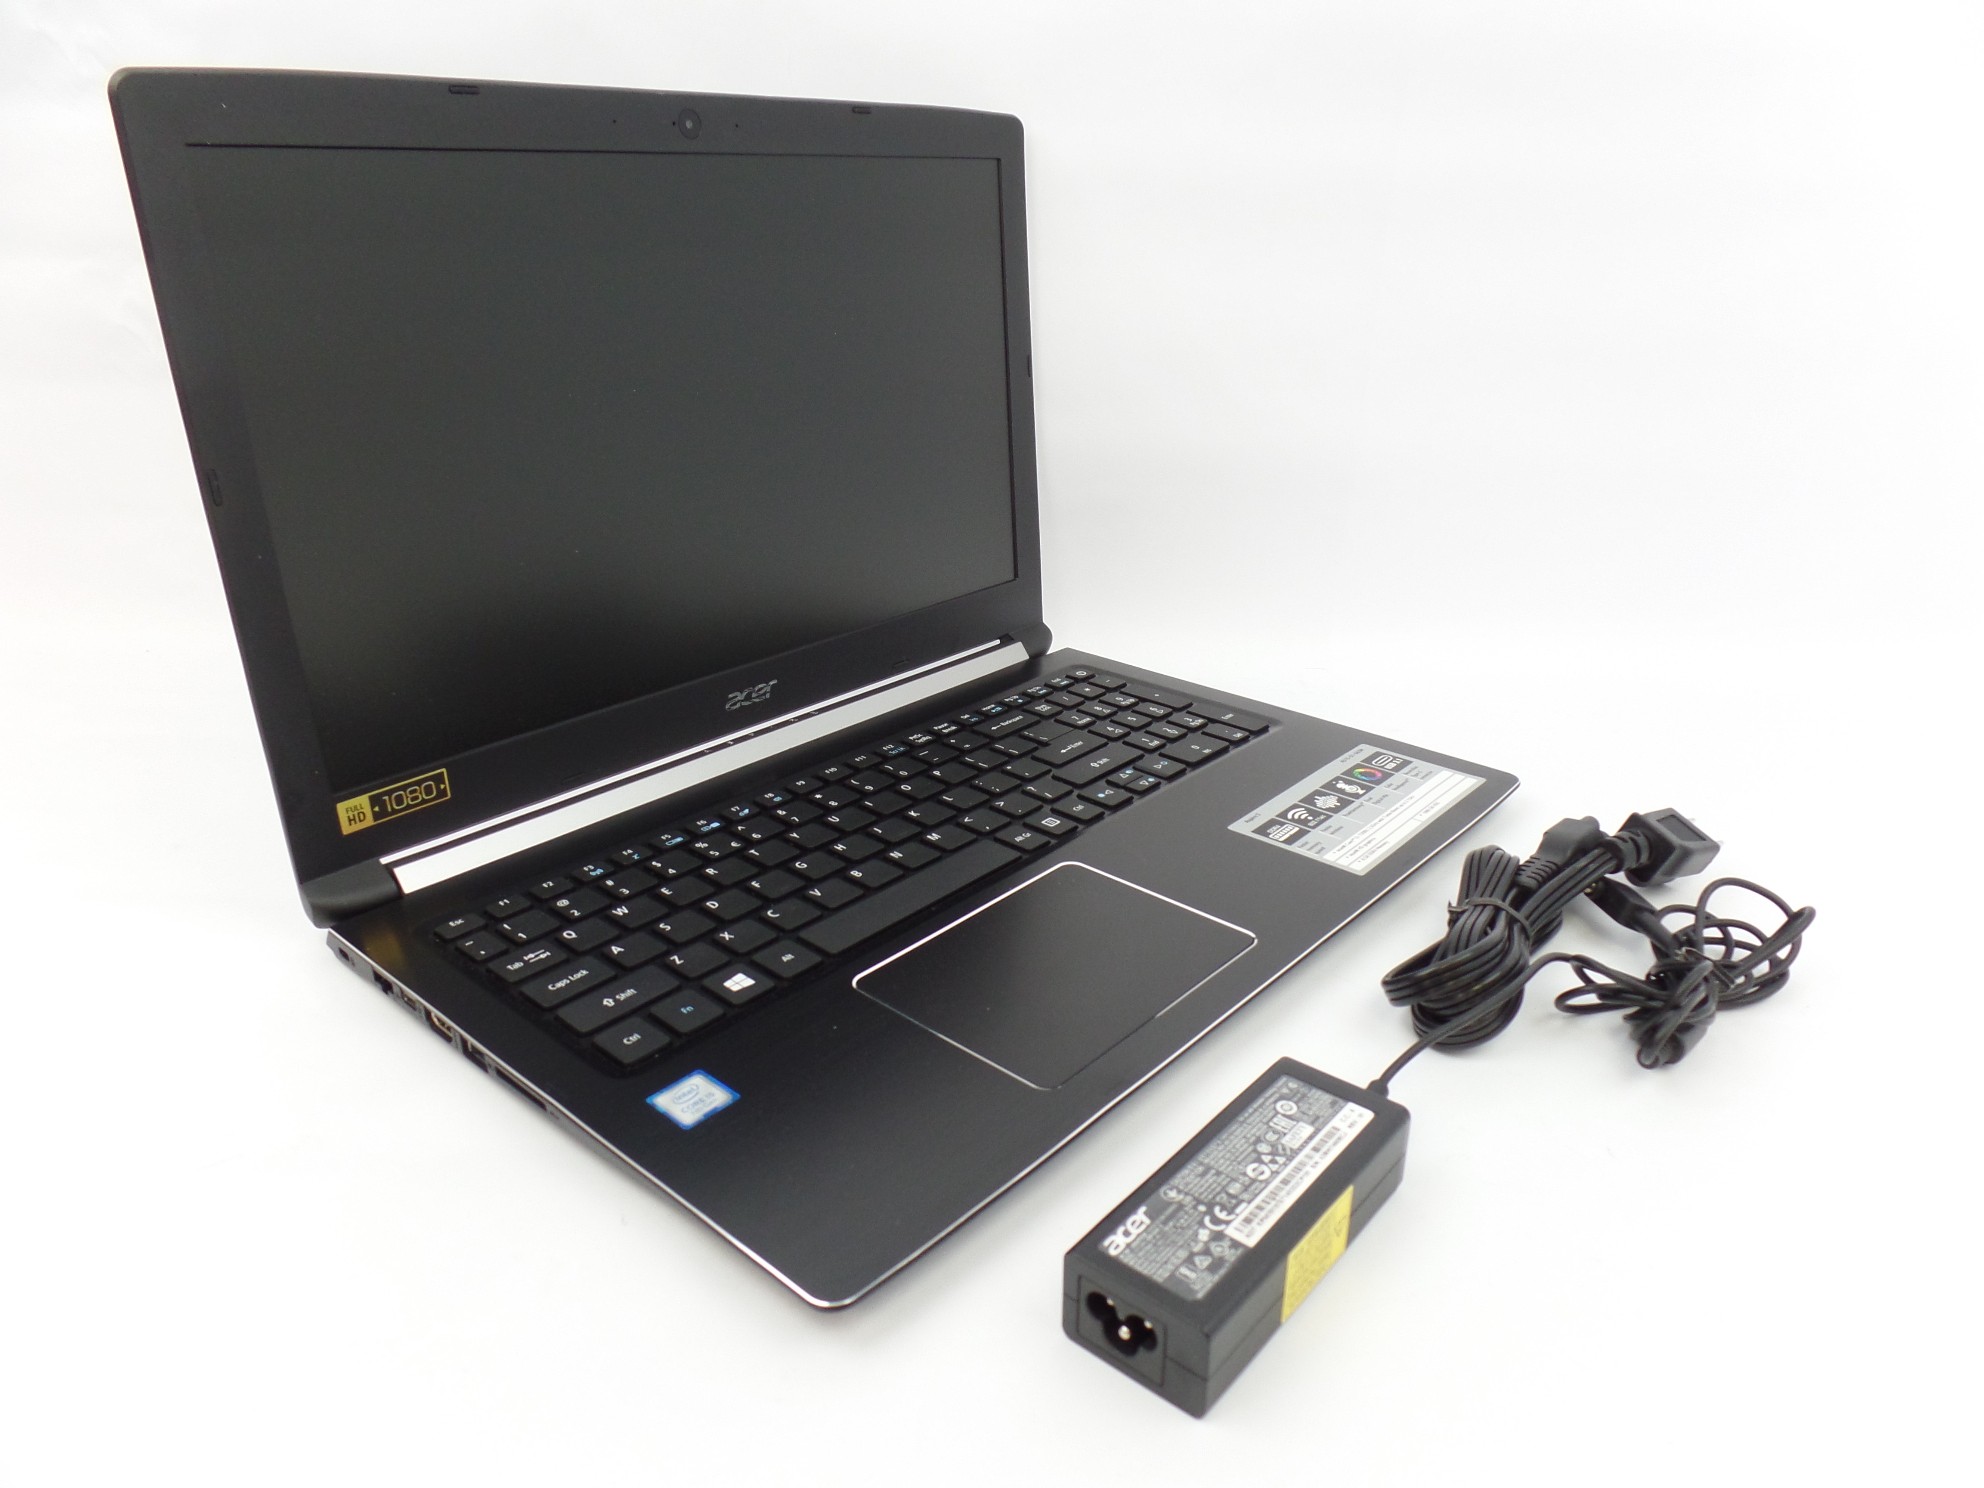 Acer Aspire A515-51-563W 15.6" FHD i5-7200U 2.5GHz 8GB 1TB HDD W10H Laptop U